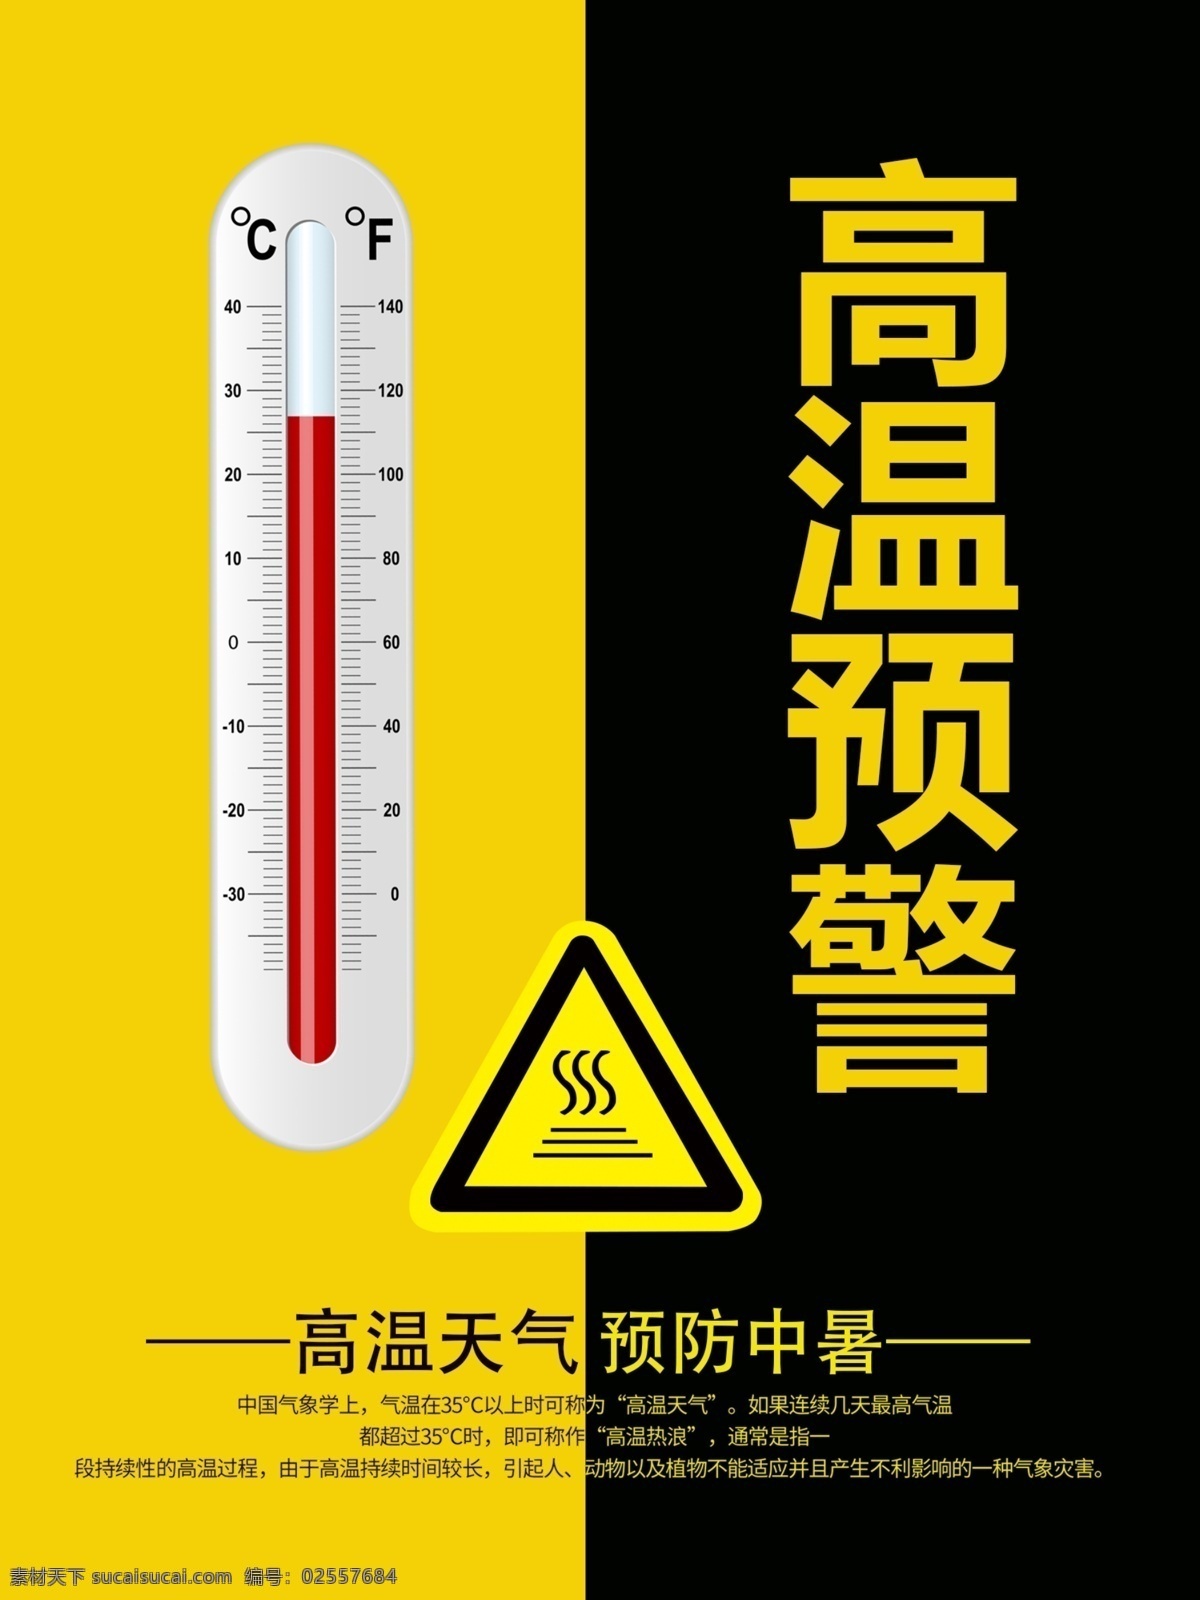 黄 黑色 简约 大气 高温 预警 海报 黄色 天气预报 清新 温度计素材 简约大气 沙漠风格素材 高温预警 高温提示